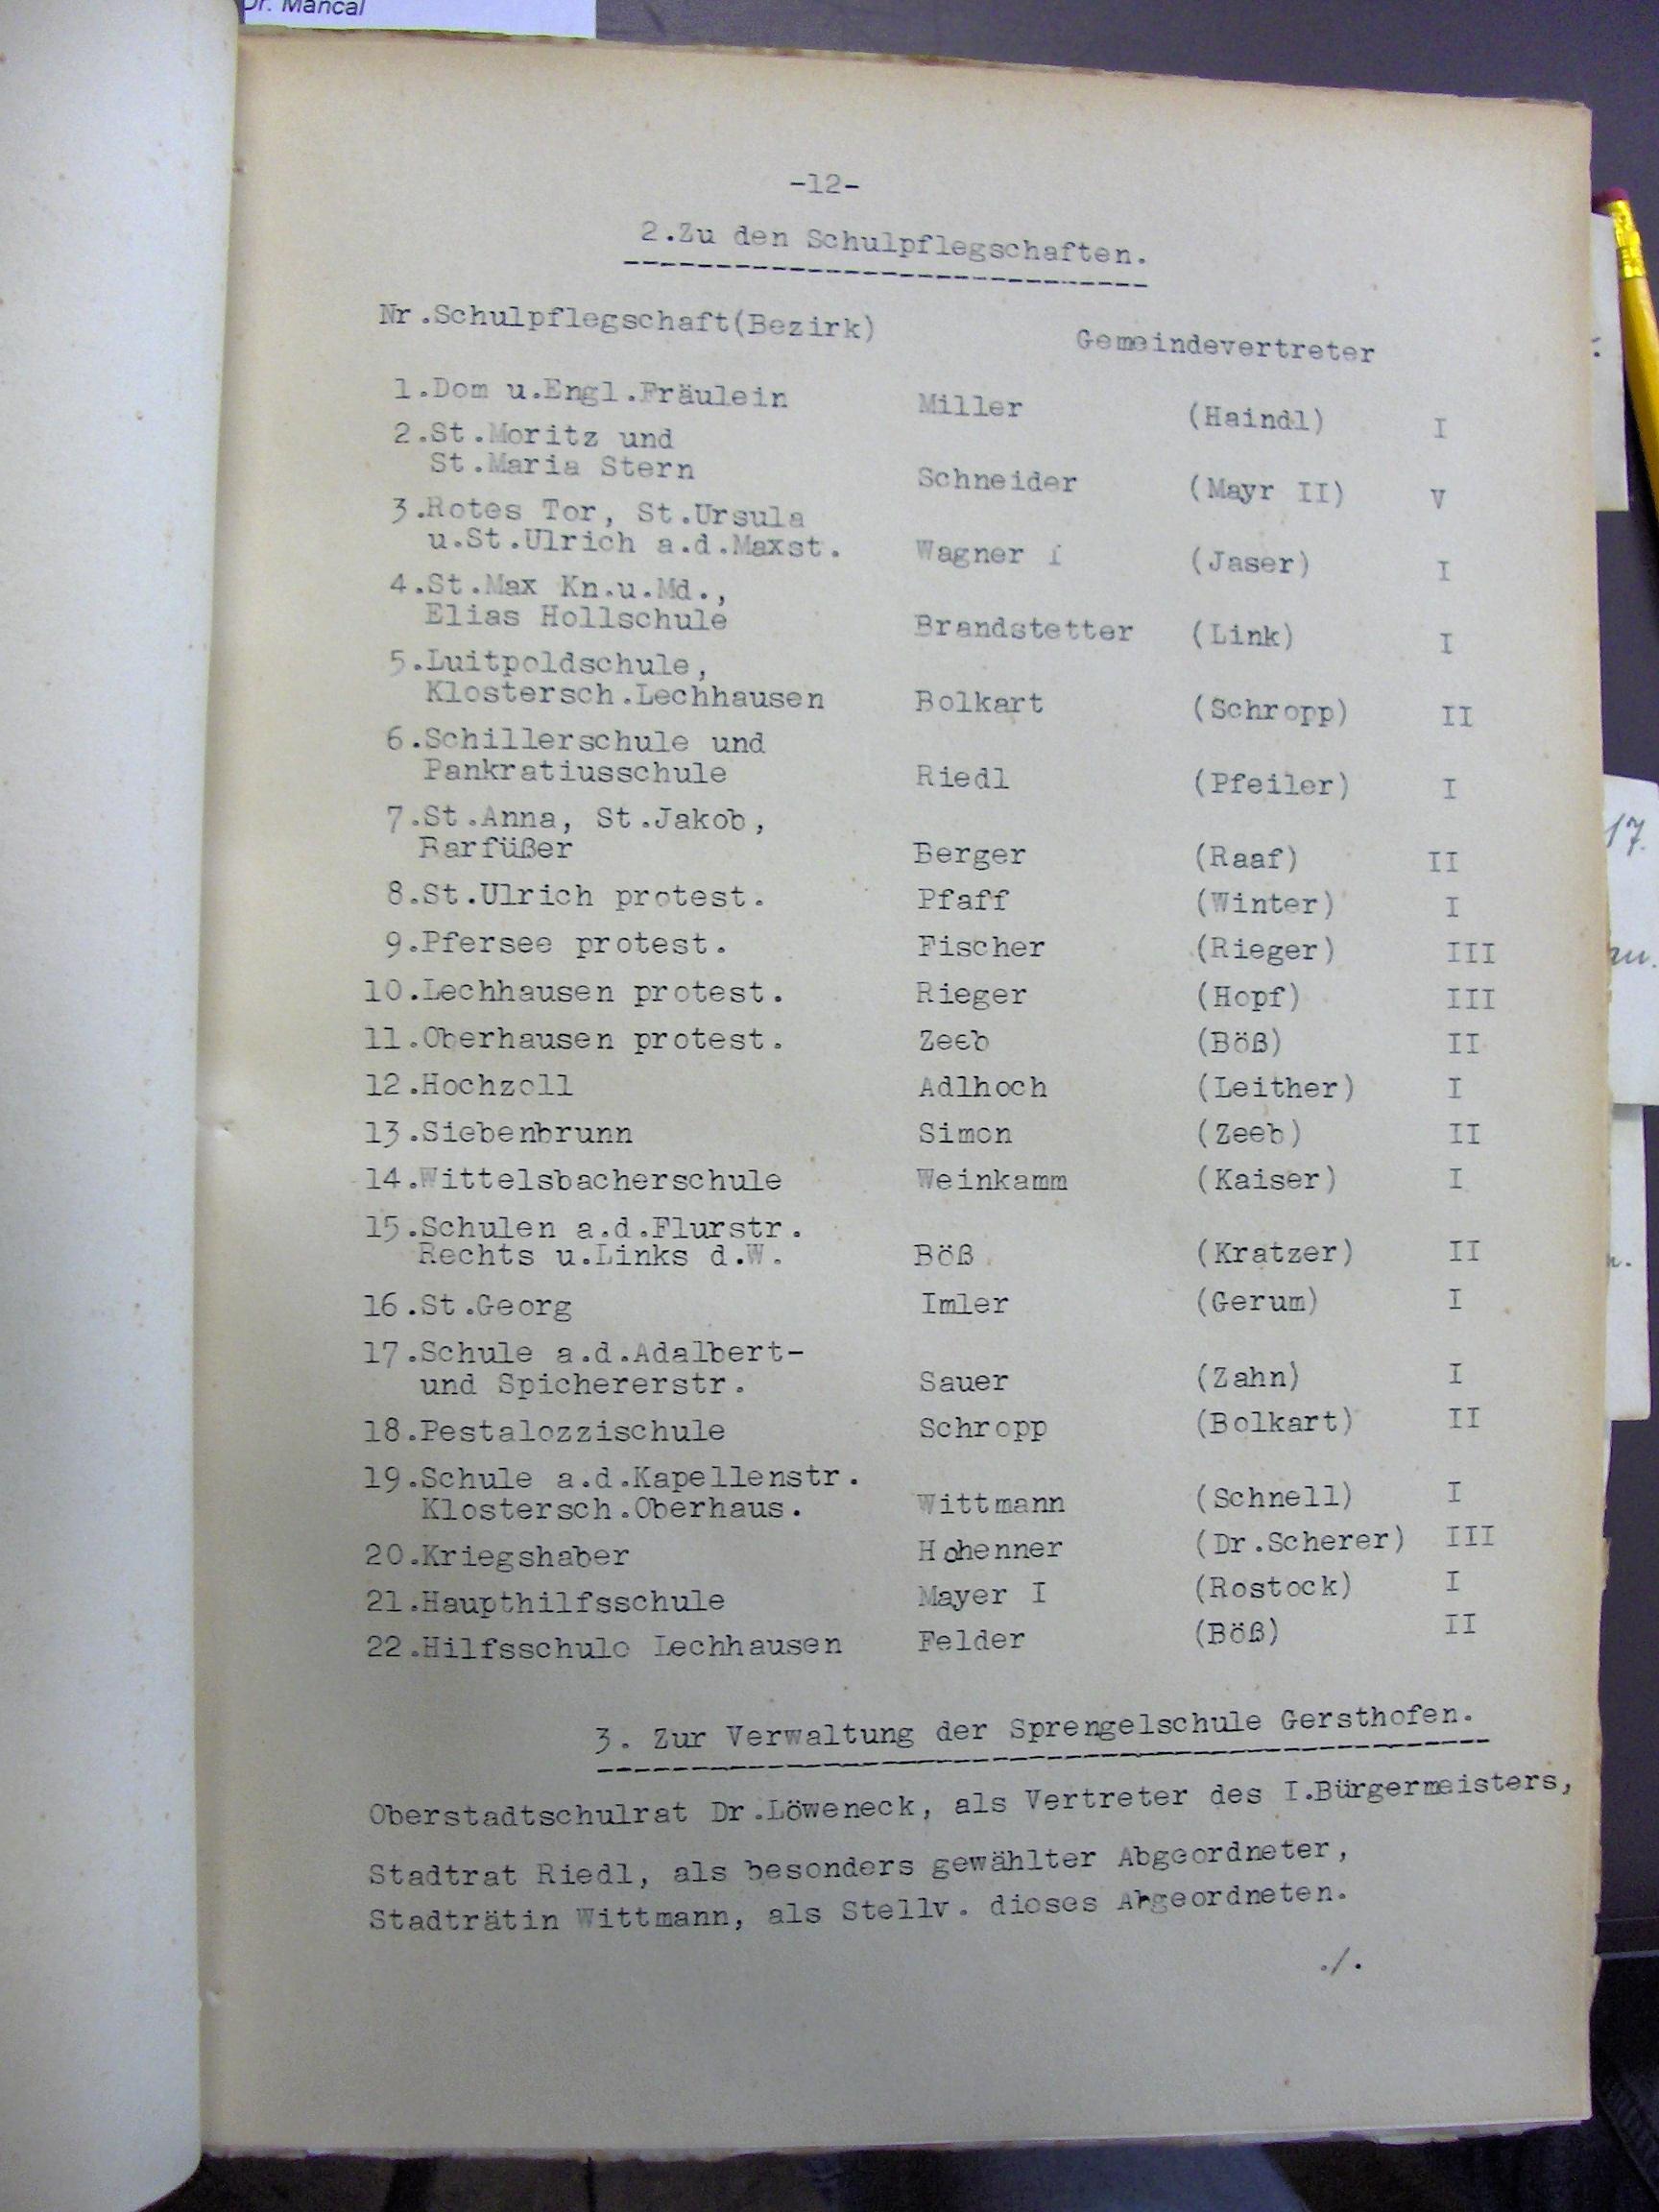 Sitzungsprotokoll aus Augsburg 1930, mit Josef Felder als Schulpfleger der Hilfsschule Lechhausen